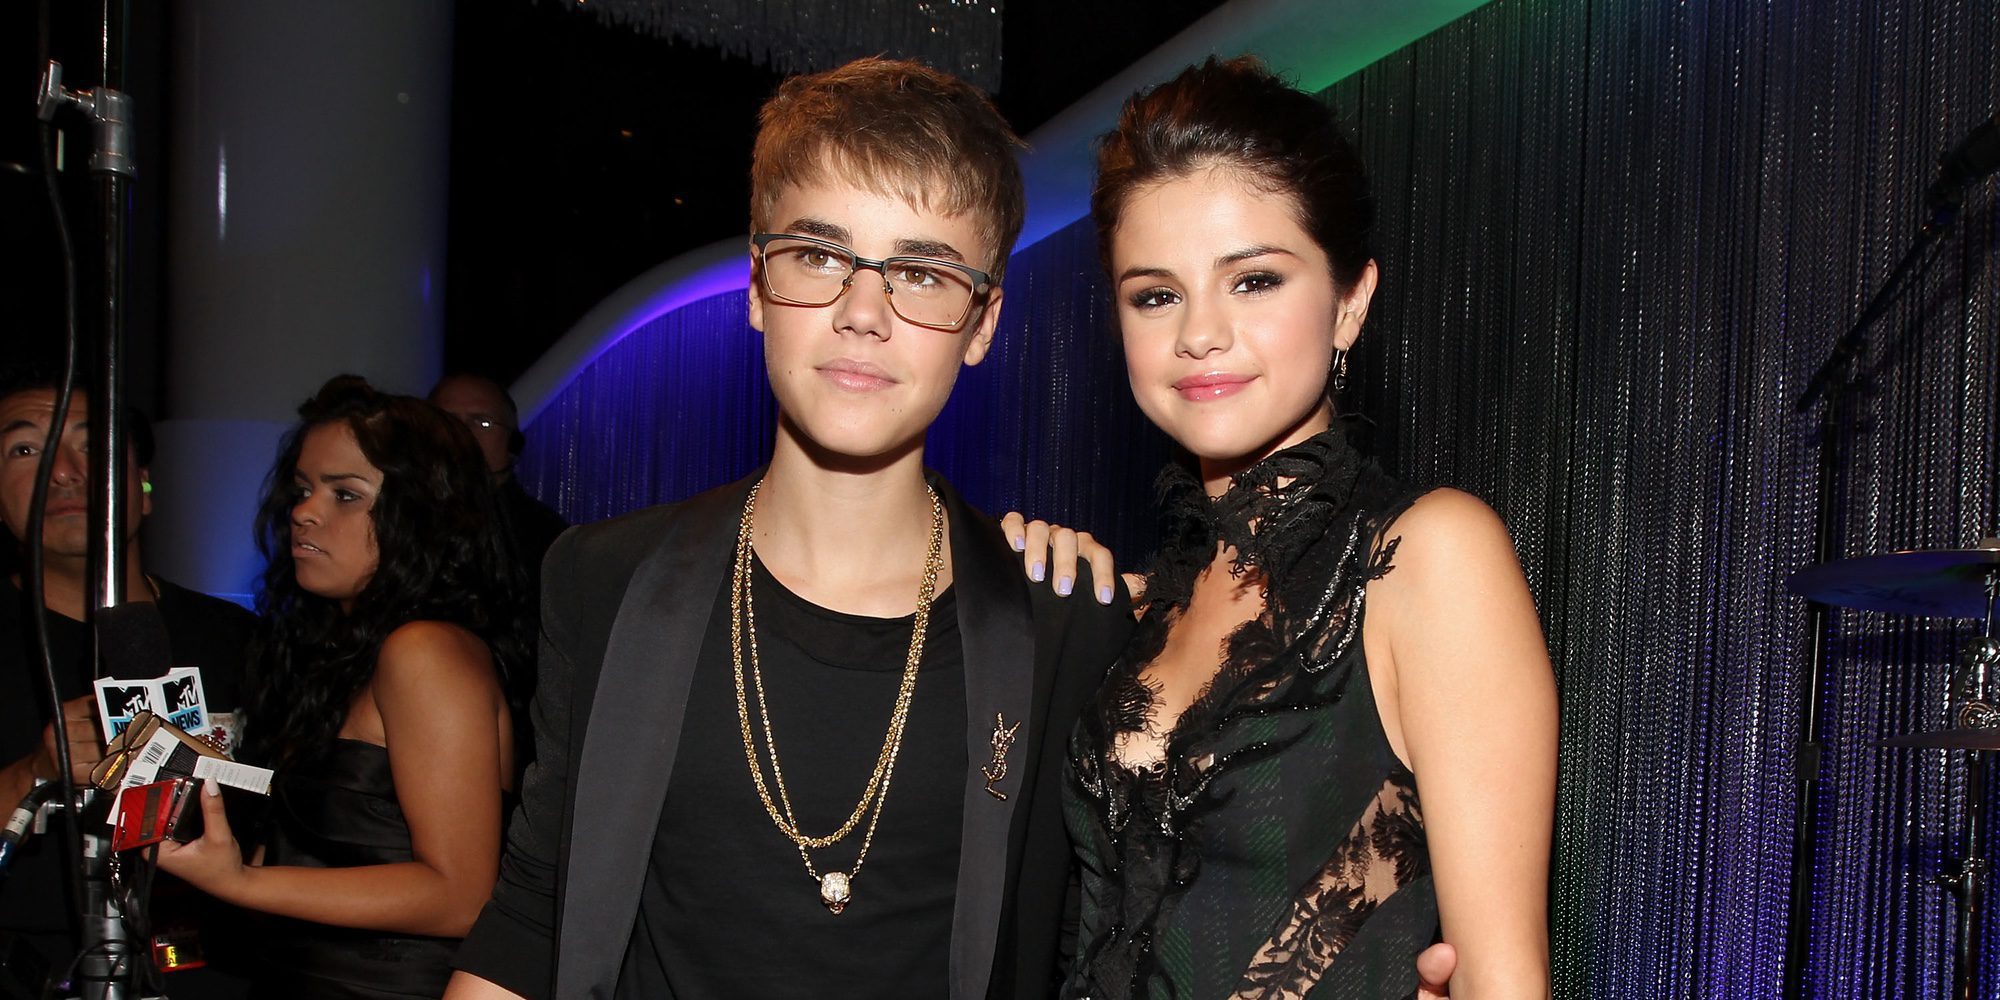 La decisión de Justin Bieber y Selena Gomez tras su reconciliación